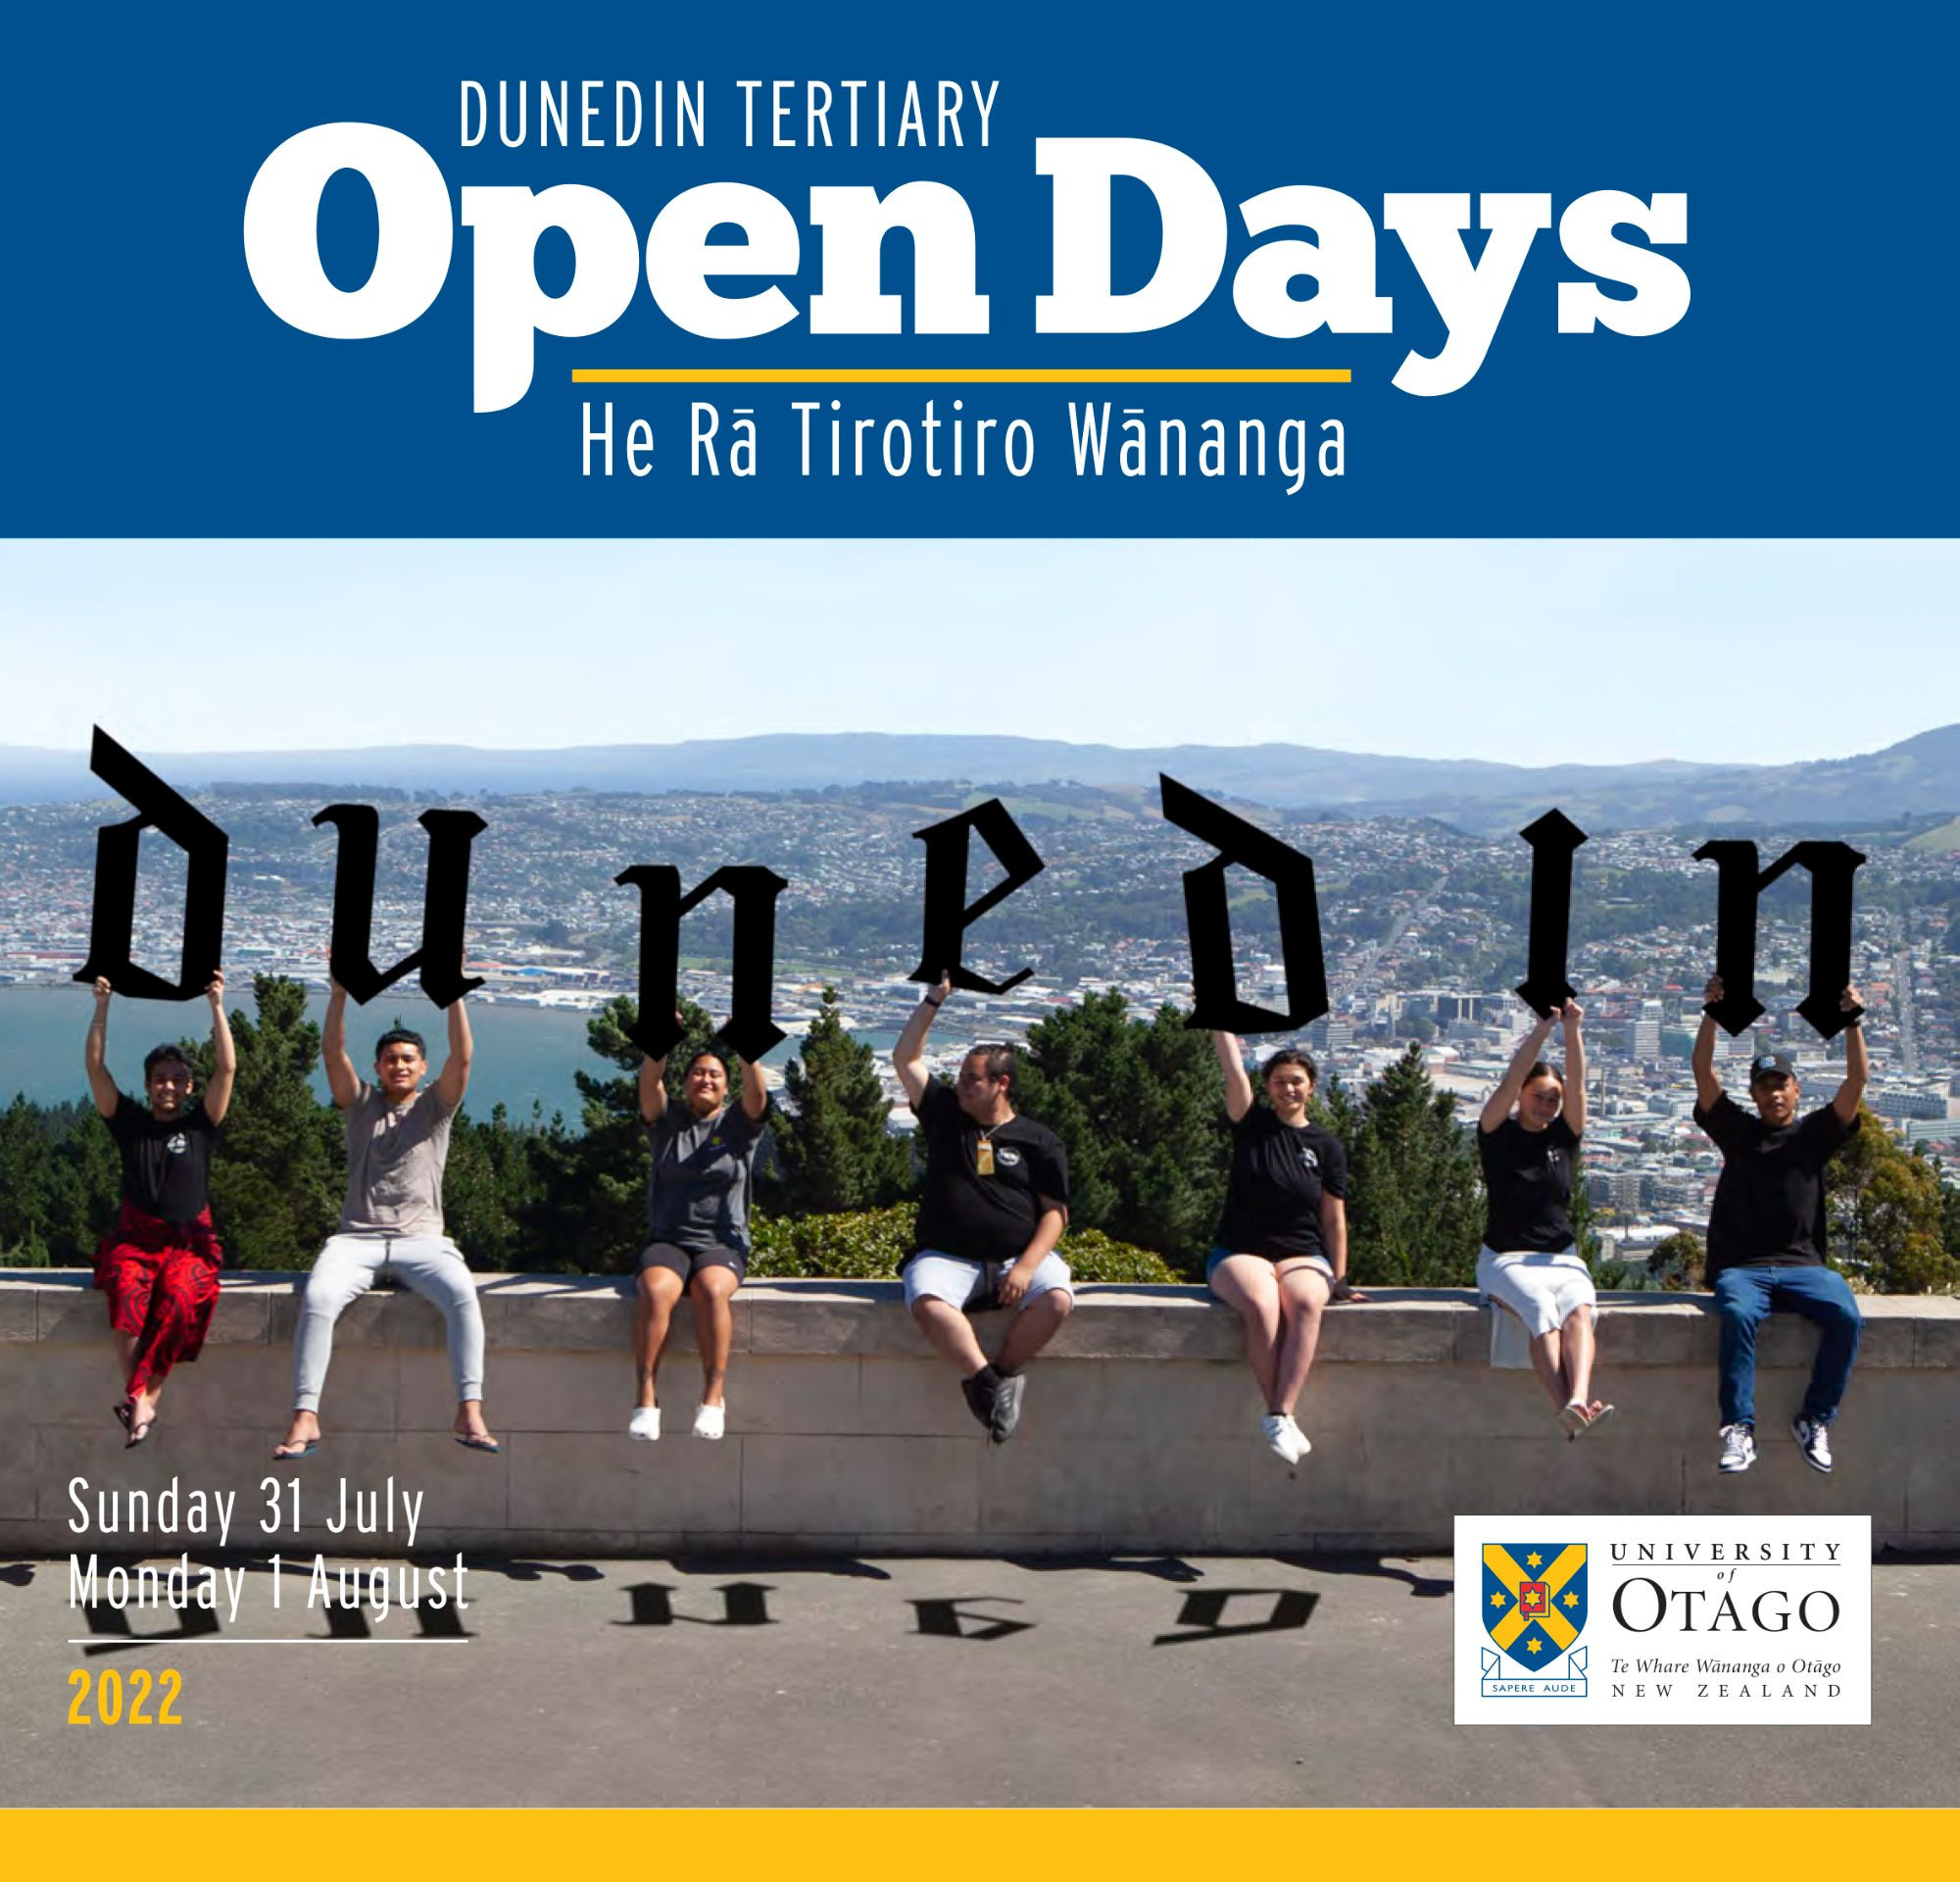 Dunedin Tertiary Open Days 2022